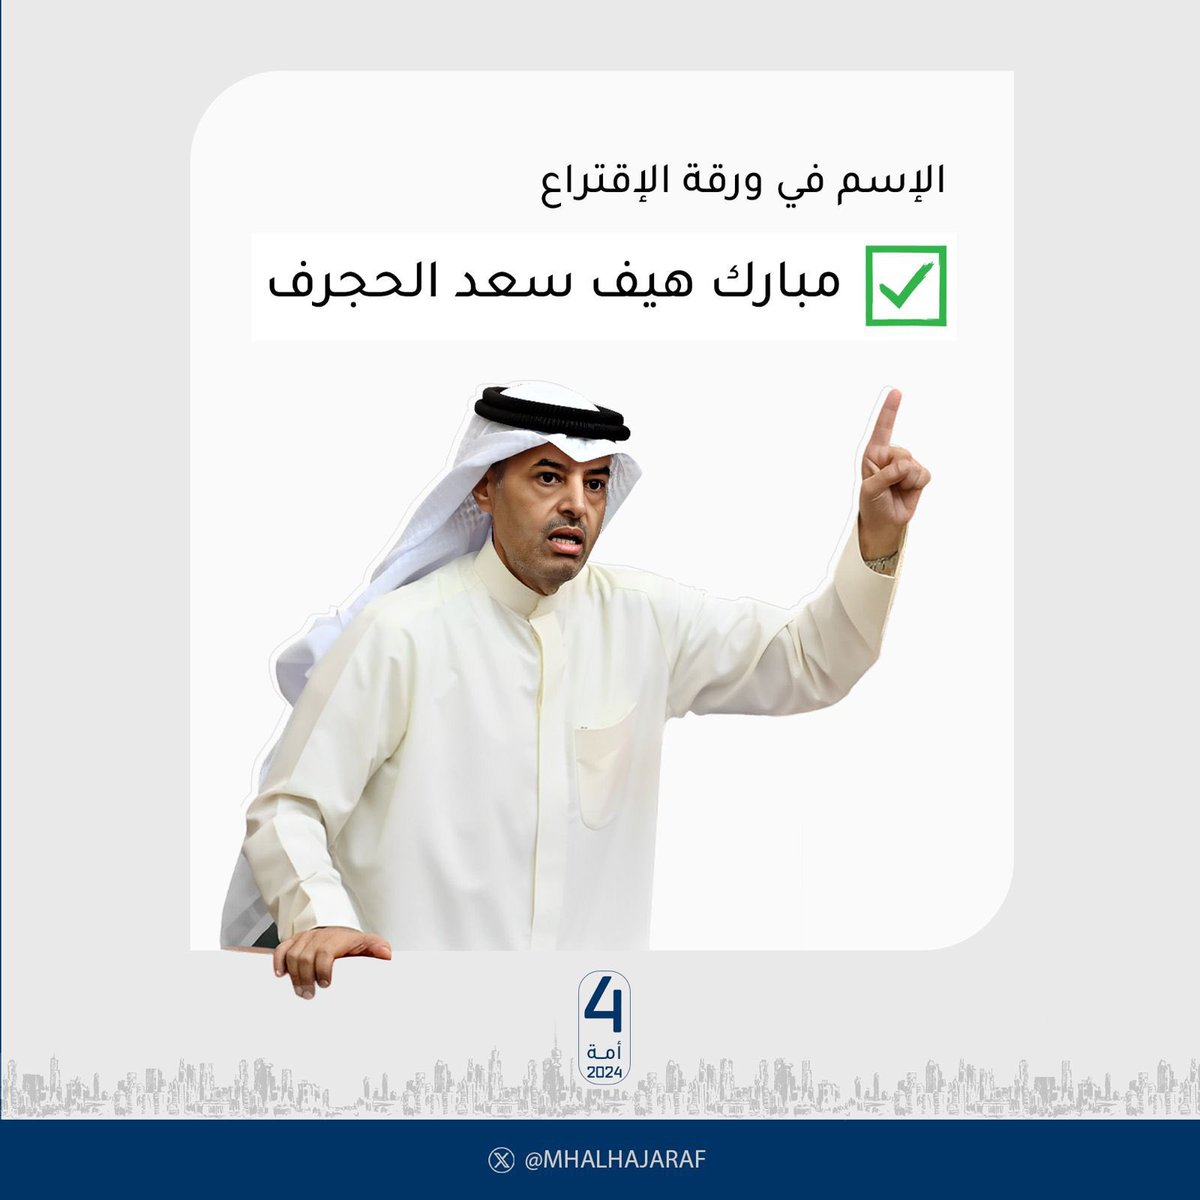 الإخوة و الاخوات الناخبين والناخبات نود أن ننوه أن اسم أخوكم و مرشحكم مبارك الحجرف في ورقة التصويت هو /مبارك هيف سعد الحجرف .